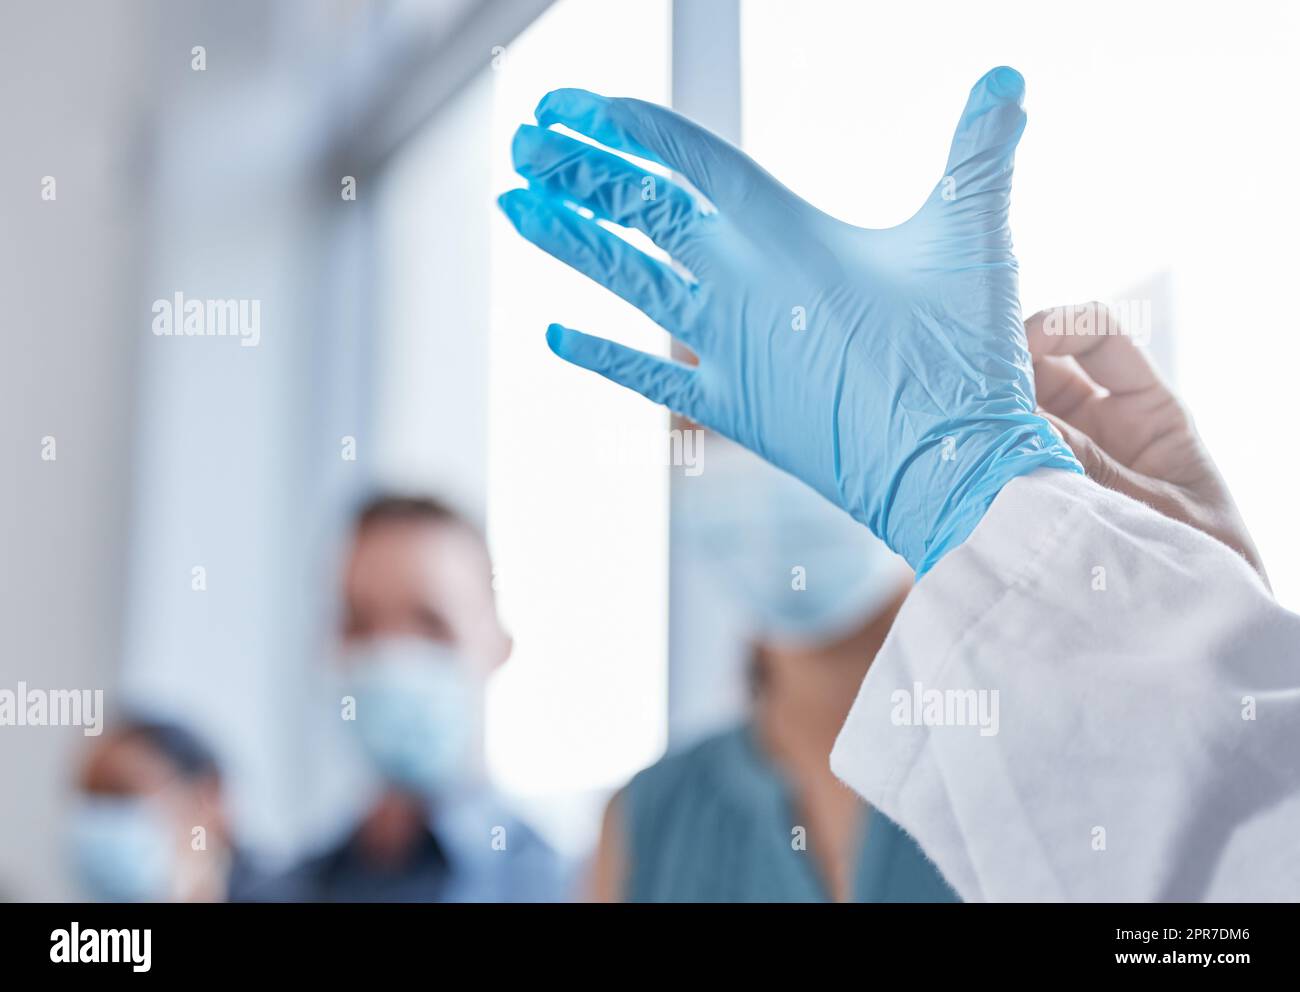 La sicurezza prima di tutto. Primo piano di un medico irriconoscibile che indossa guanti durante il trattamento dei pazienti covidi in ospedale. Foto Stock